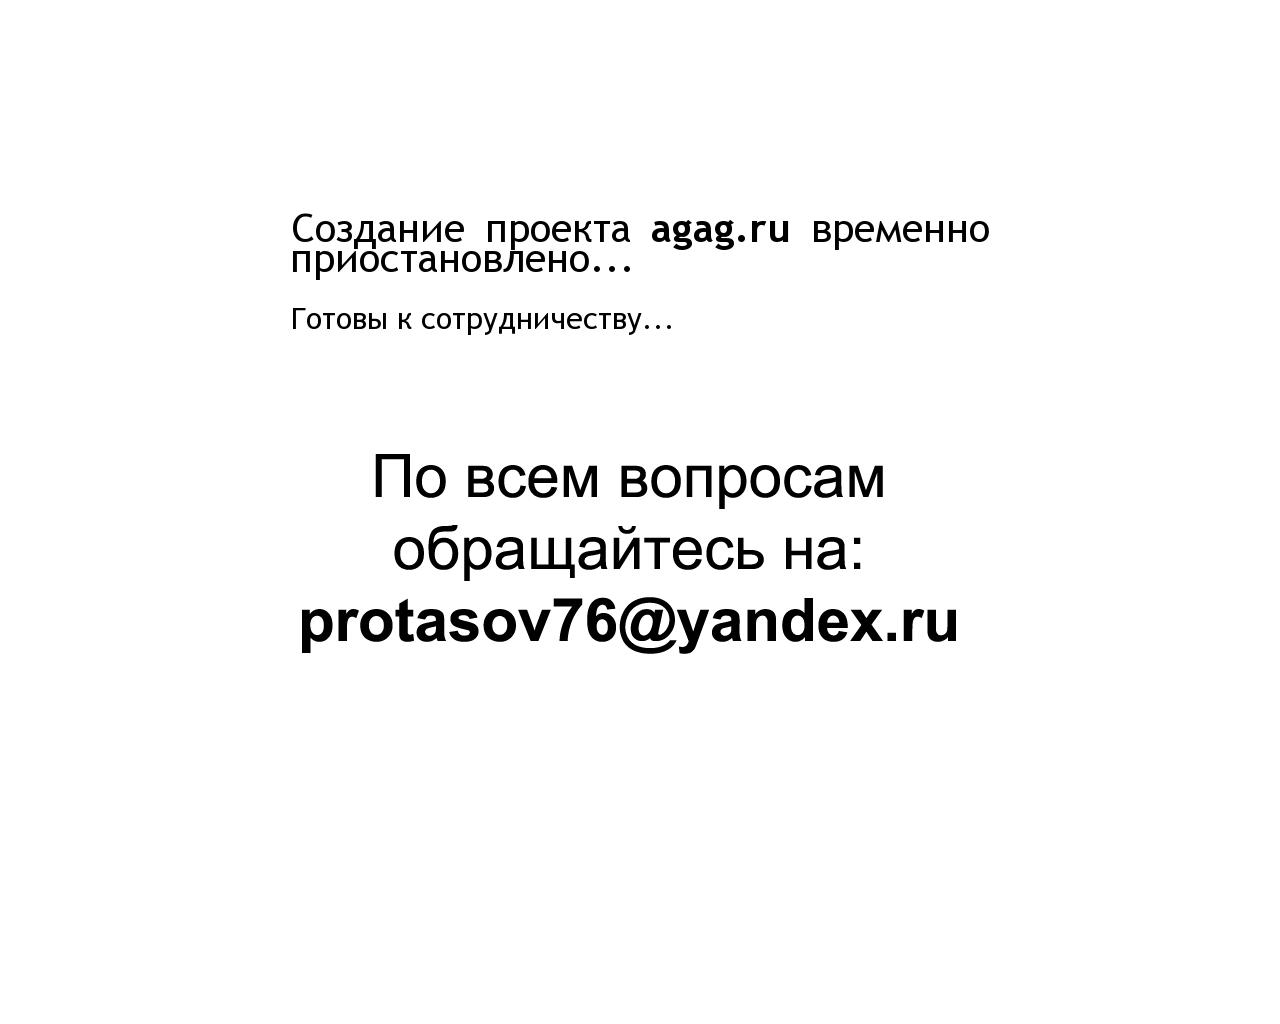 Изображение сайта agag.ru в разрешении 1280x1024